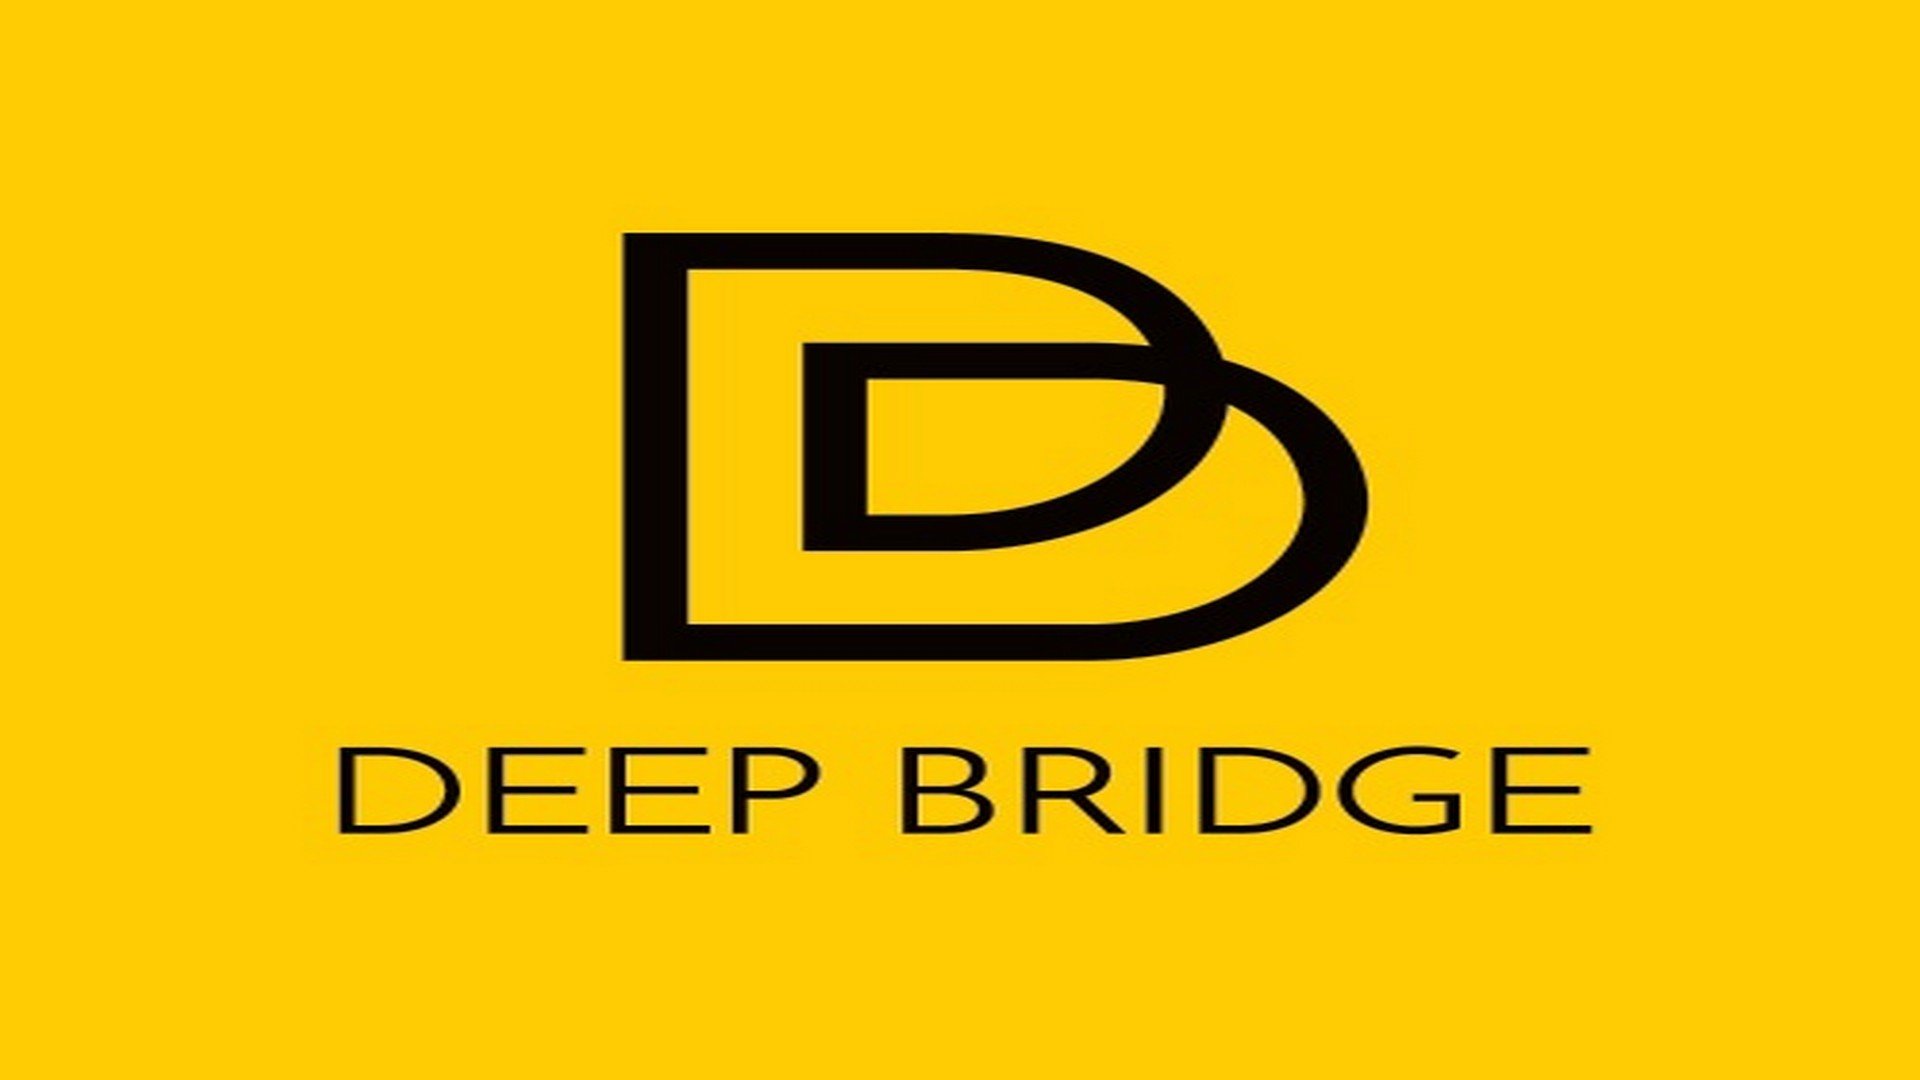 Mamma Mia! voegt 3 extra voorstellingen toe aan de speellijst. - Logo deep bridge 1